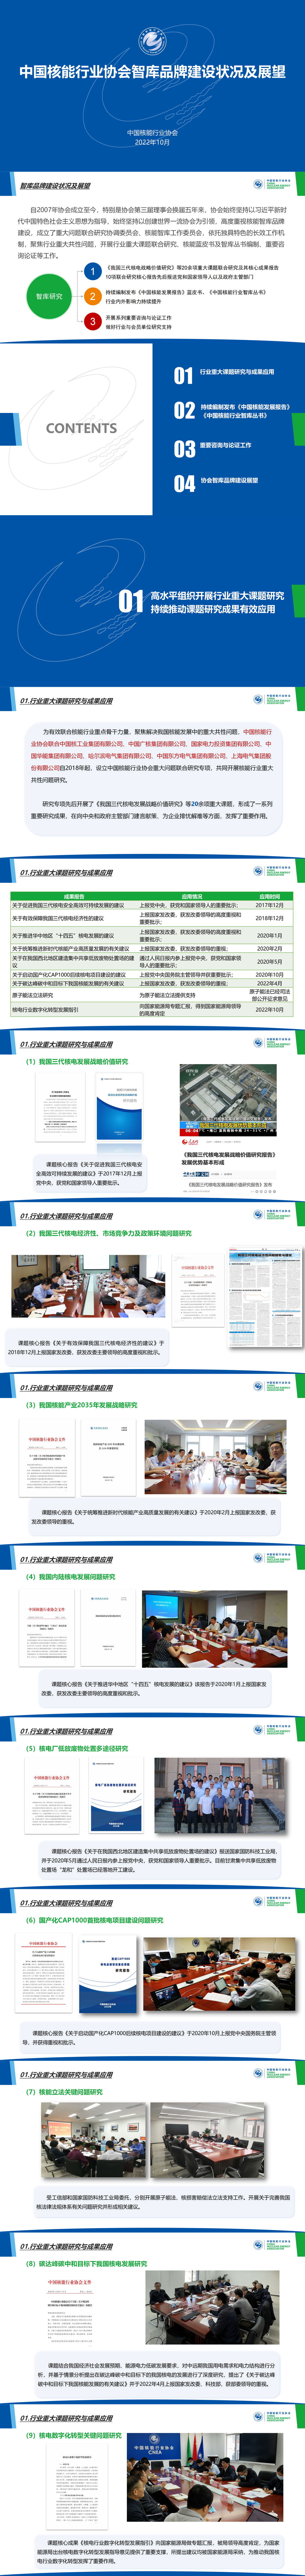 中国核能行业协会智库品牌建设状况及展望_01.png